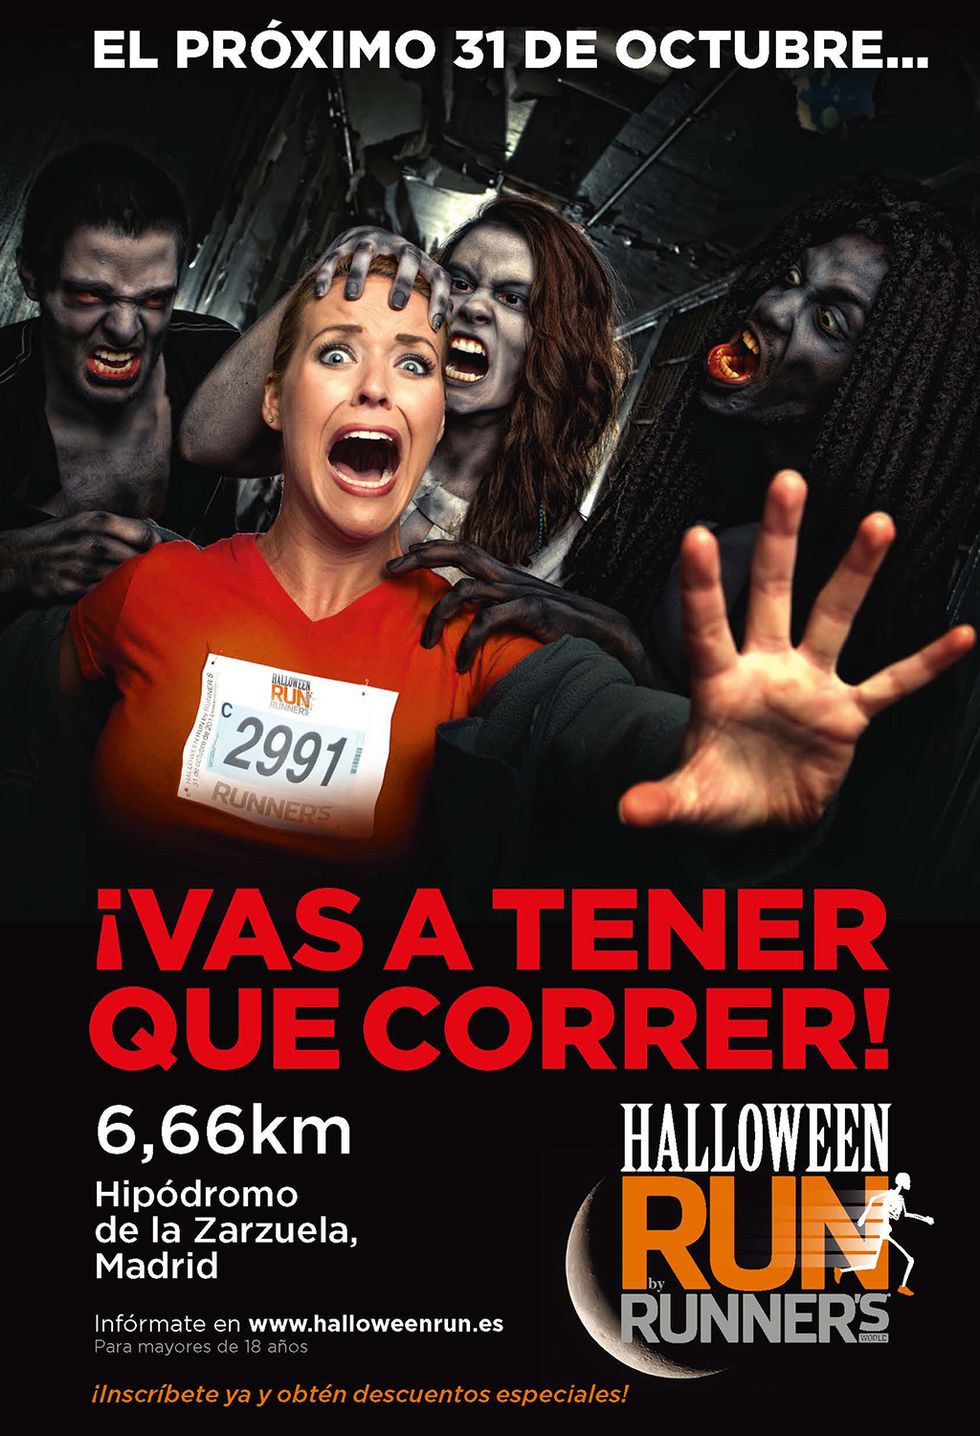 <p>Te morirás de miedo en esta carrera: correrás de noche por tierra, asfalto, tramos iluminados y otros en penumbra; una distancia de 6,66 km (el número de la bestia), en un itinerario circular que empieza y termina en el Hipódromo de Madrid. La <a href="http://www.halloweenrun.es/" target="_blank"><strong>Halloween Run 2015</strong></a> promete muchas sorpresas y emociones, además de mucha diversión. Se puede y se recomienda participar disfrazado y es recomendable llevar algo de luz frontal... para evitar sustos.</p>